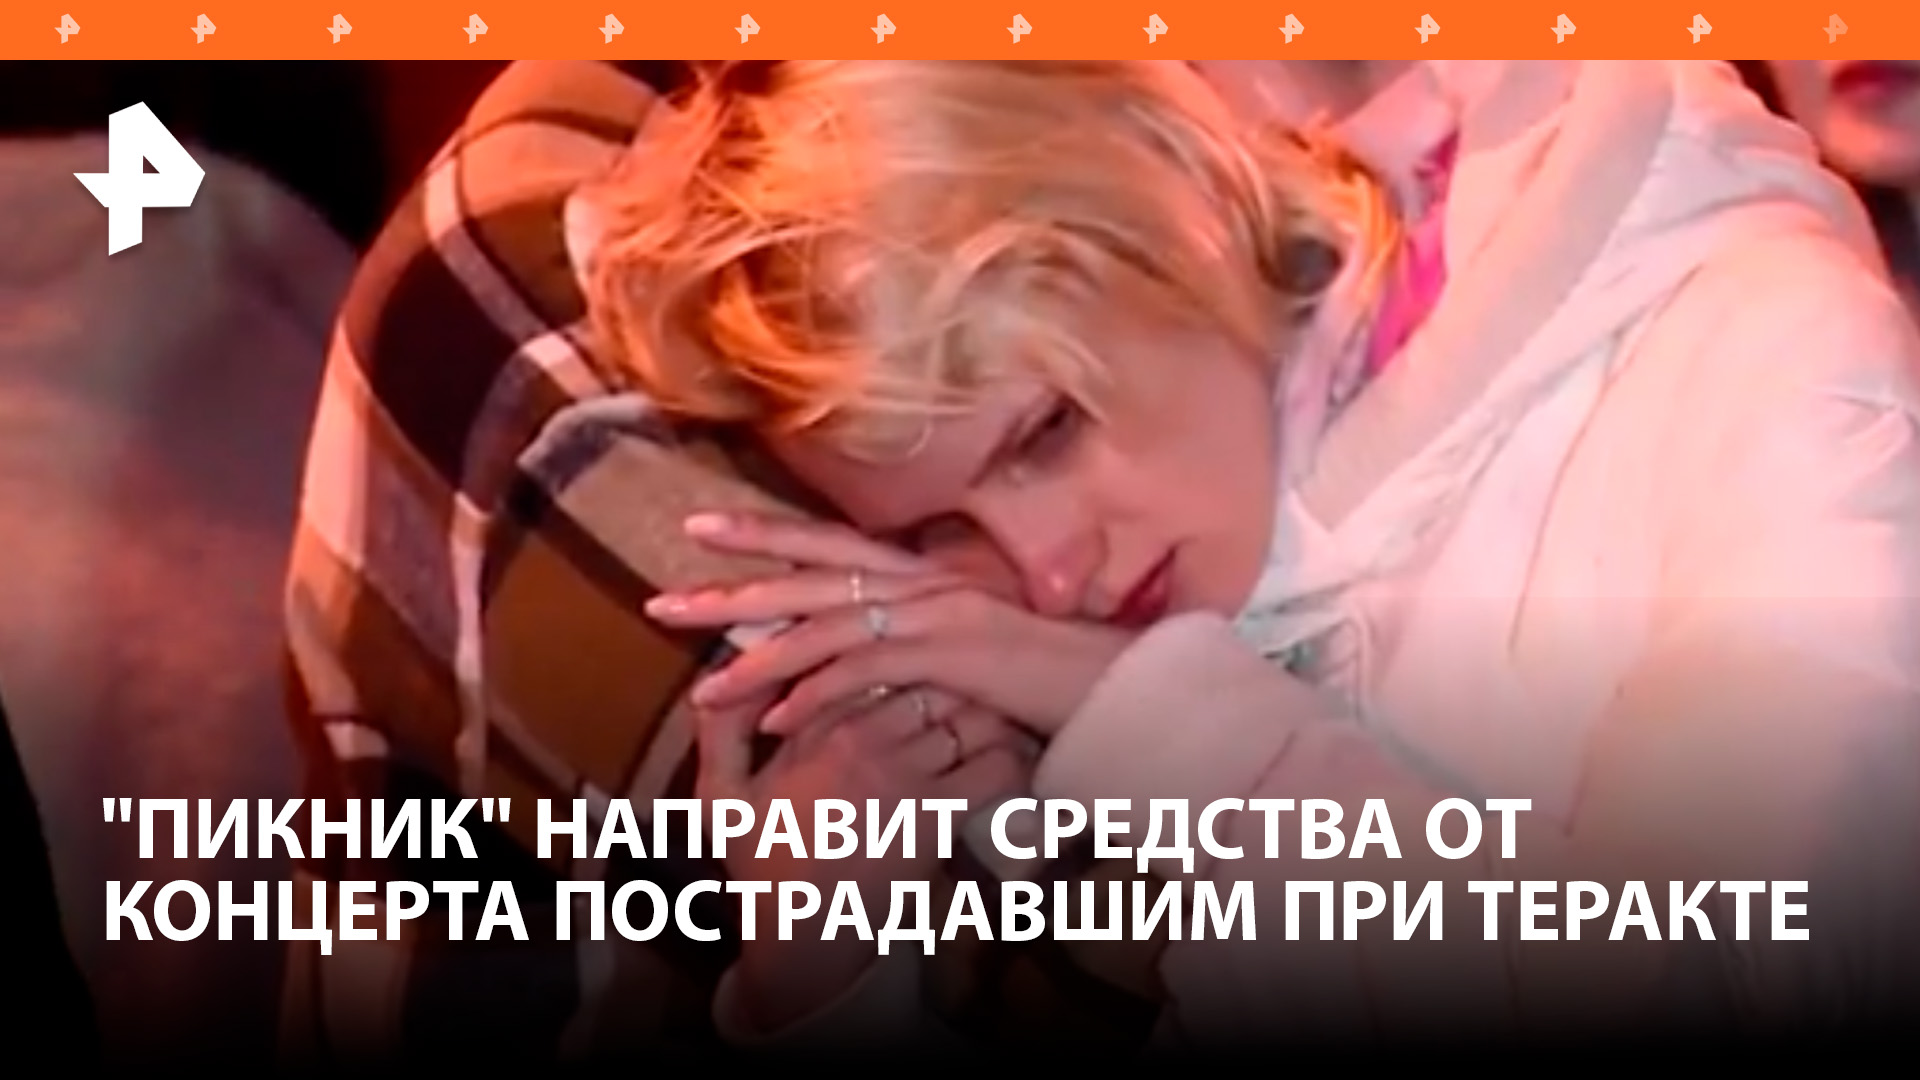 "Пикник" направит пострадавшим при теракте средства от концерта в Петербурге